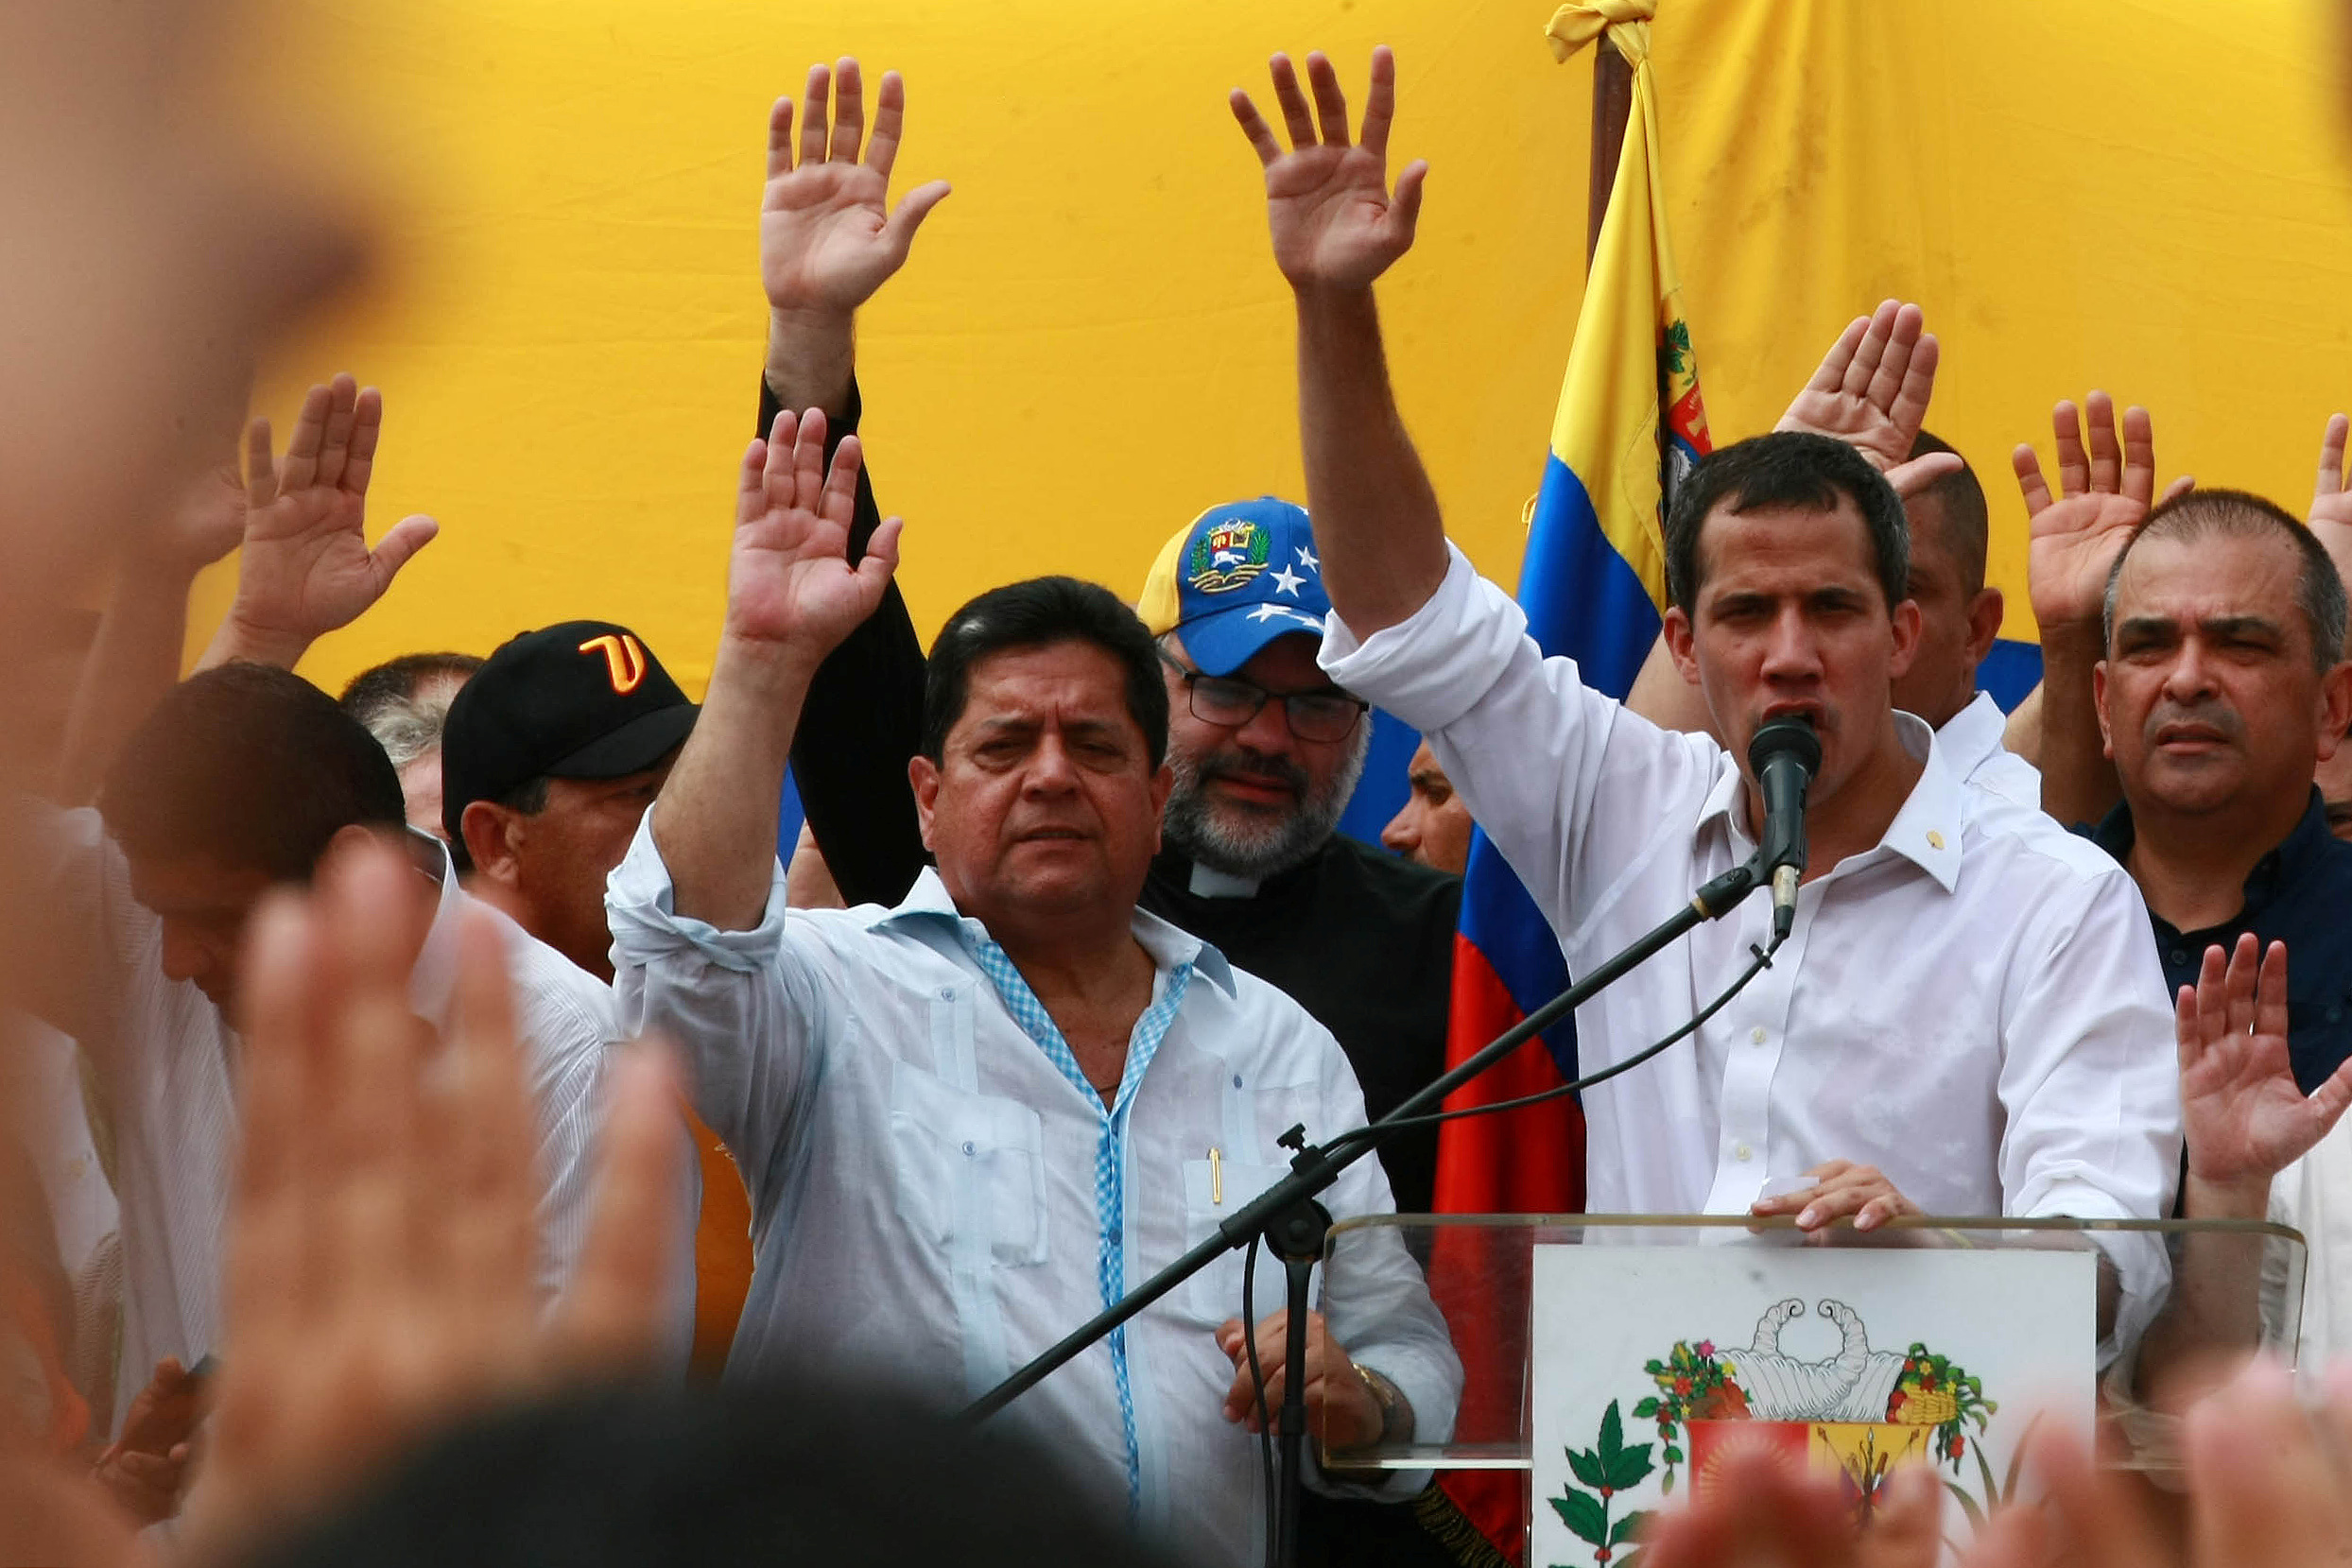 زعيم المعارضة الفنزويلية جوايدو يشارك في مظاهرة خلال زيارته لماراكايبو 22